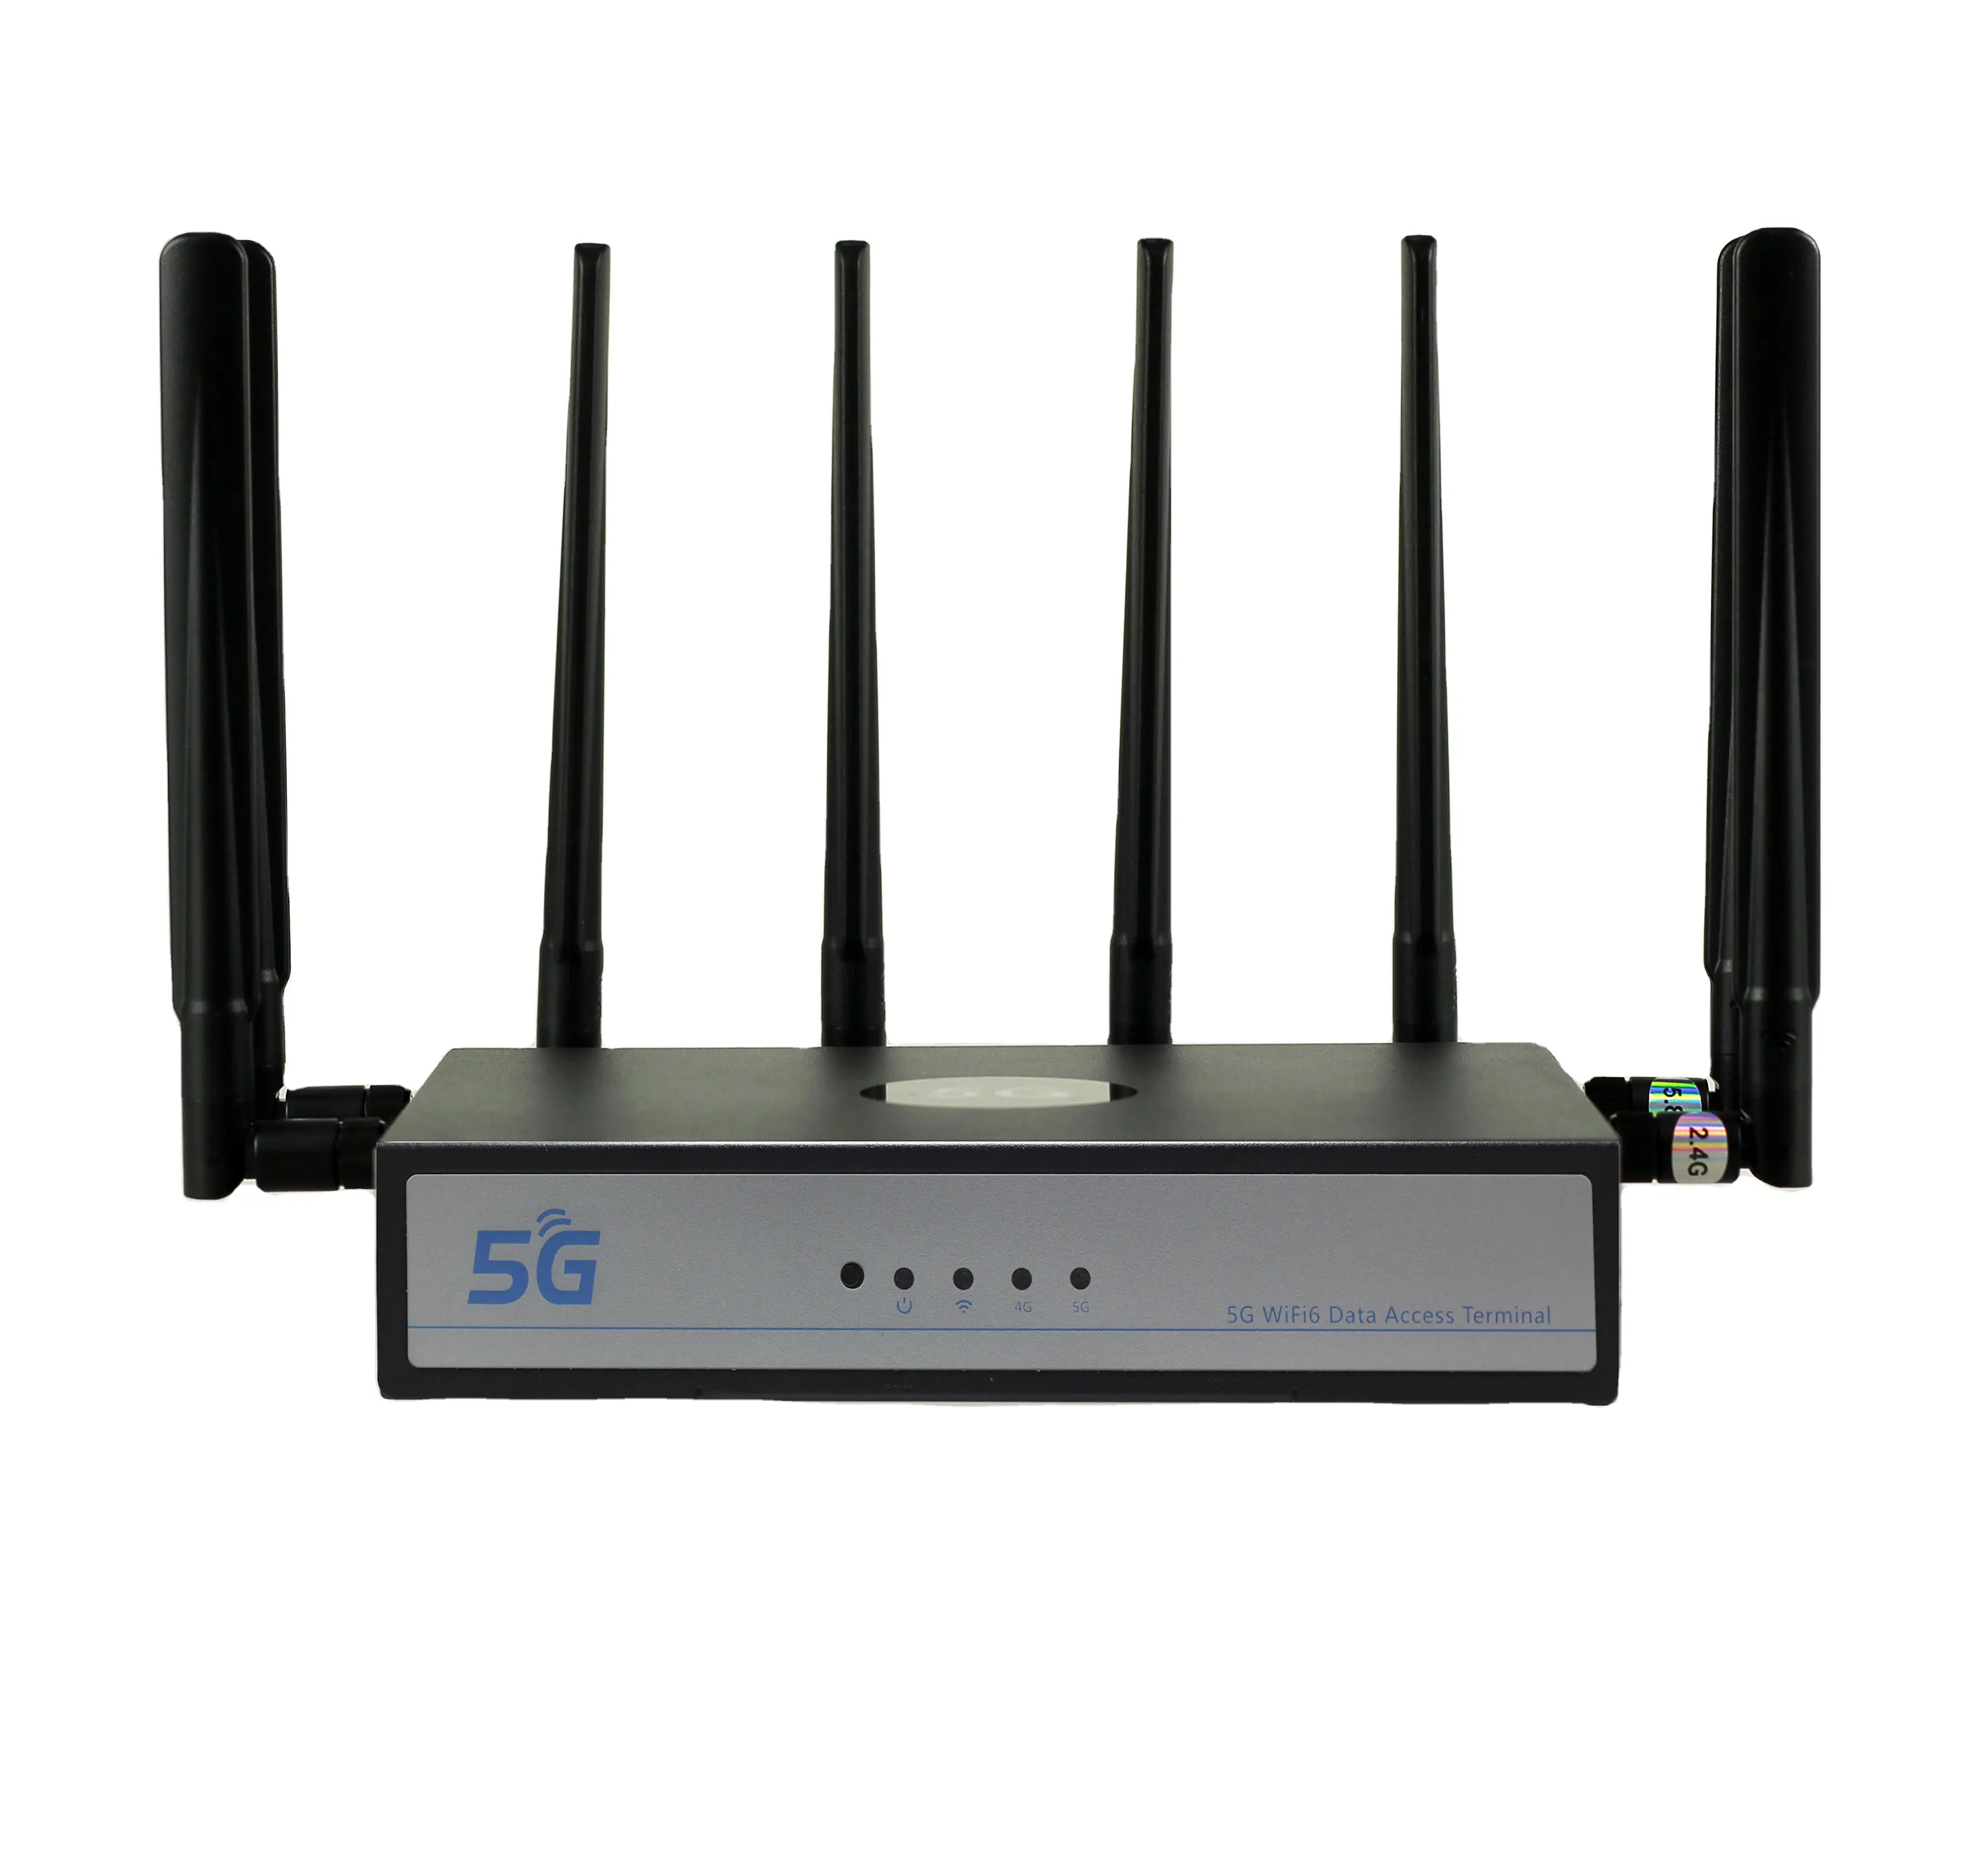 Yüksek hızlı Giga Ethernet bağlantısı 5G kablosuz CPE Modem çift bantlı akıllı WIFI 5g LTE Sim kartlı Router yuvası